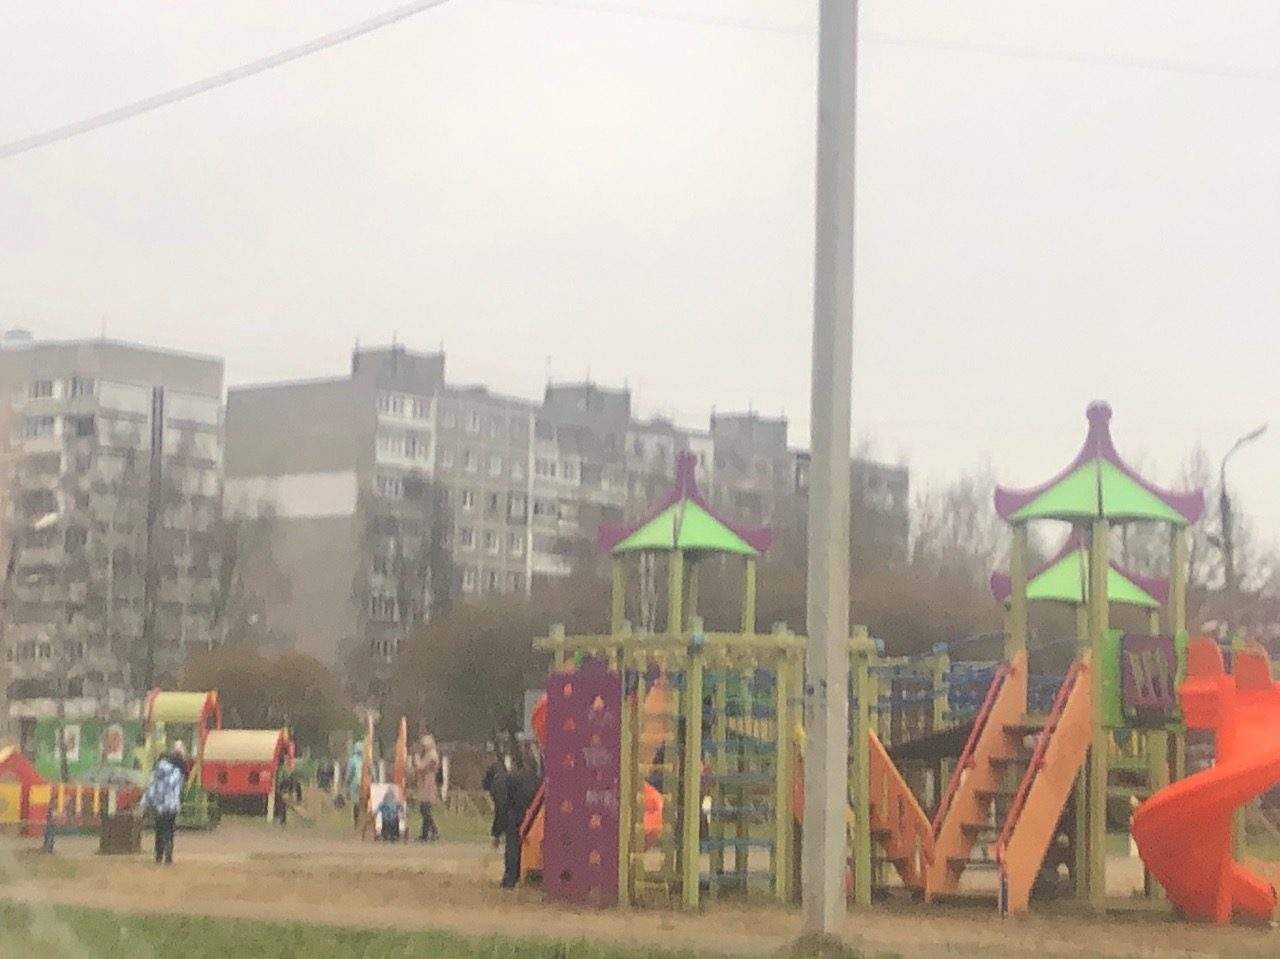 Дочь плачет в пустой квартире: воспитательница детского сада пропала под Ярославлем